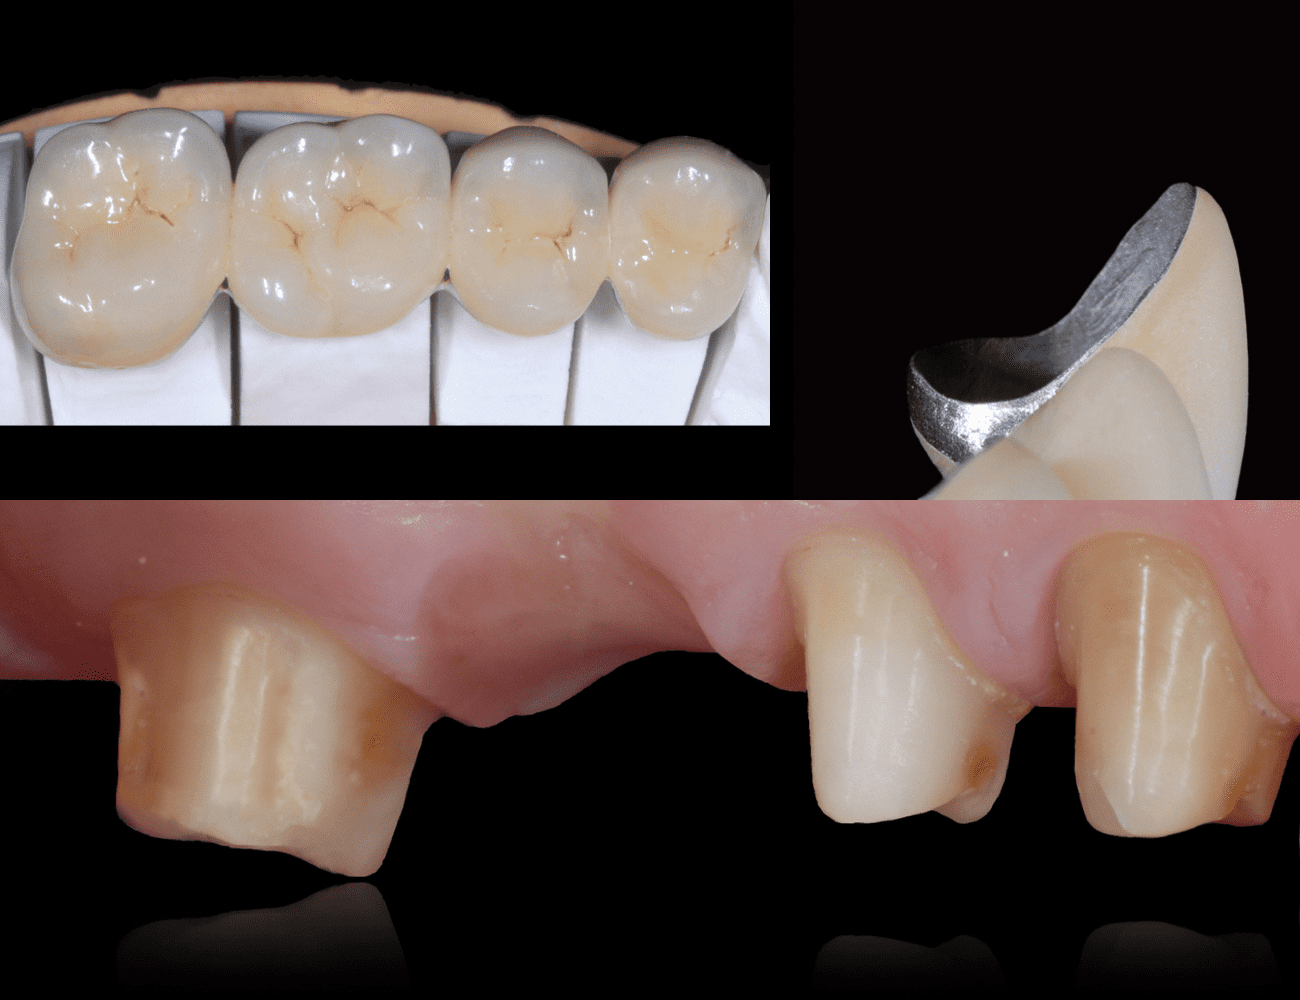 1 / Ponte finito e particolare margine metallico 2 / Preparazione dentale Credits: Prof. C. Monaco